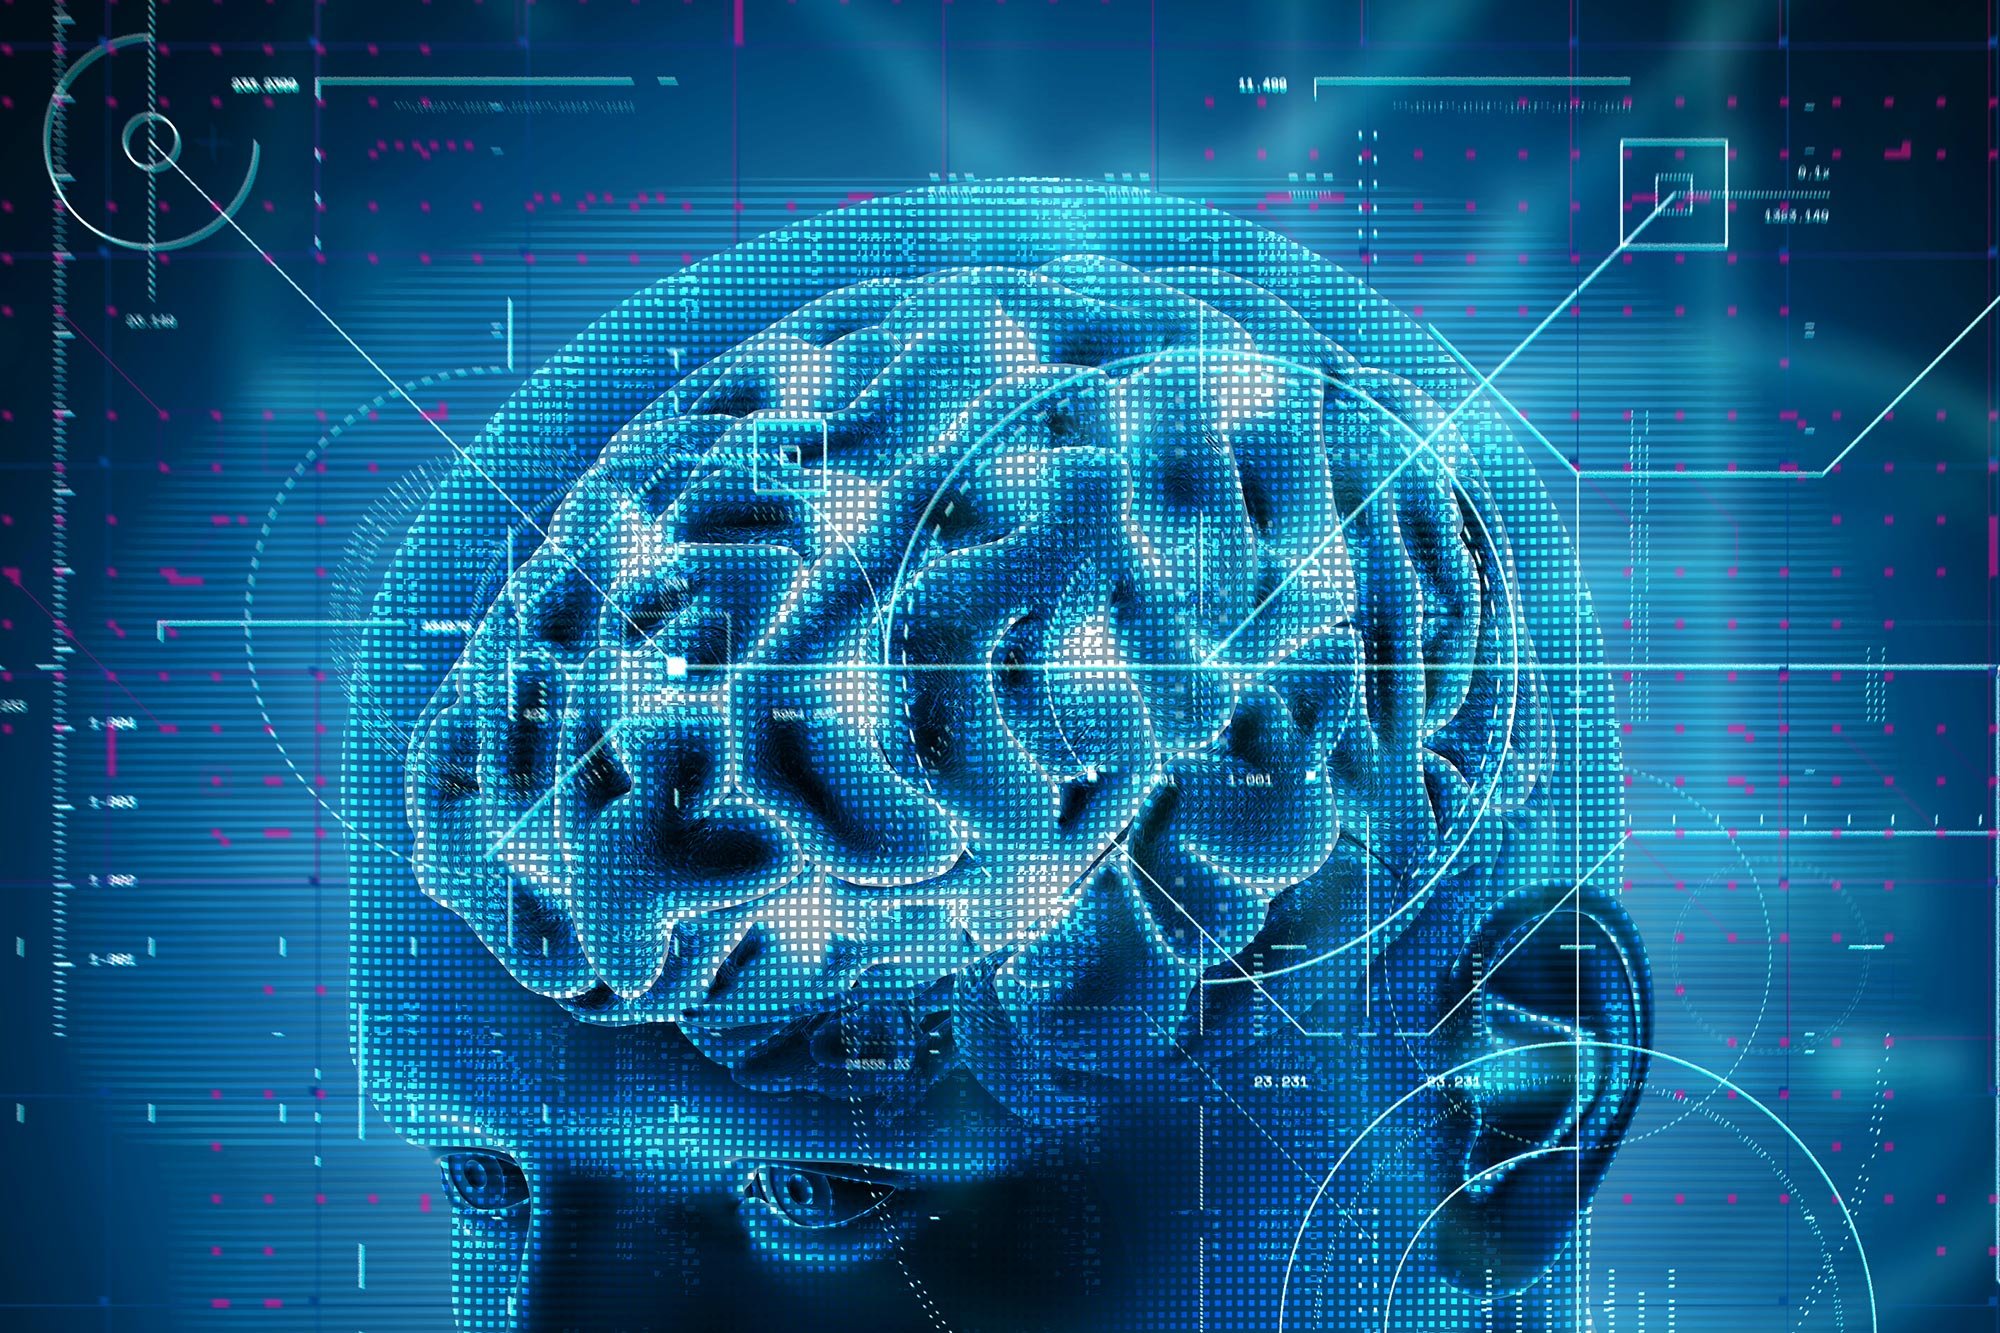 Ein jahrhundertealtes Paradigma wurde auf den Kopf gestellt: Die Form des Gehirns ist wichtiger als die neuronale Konnektivität